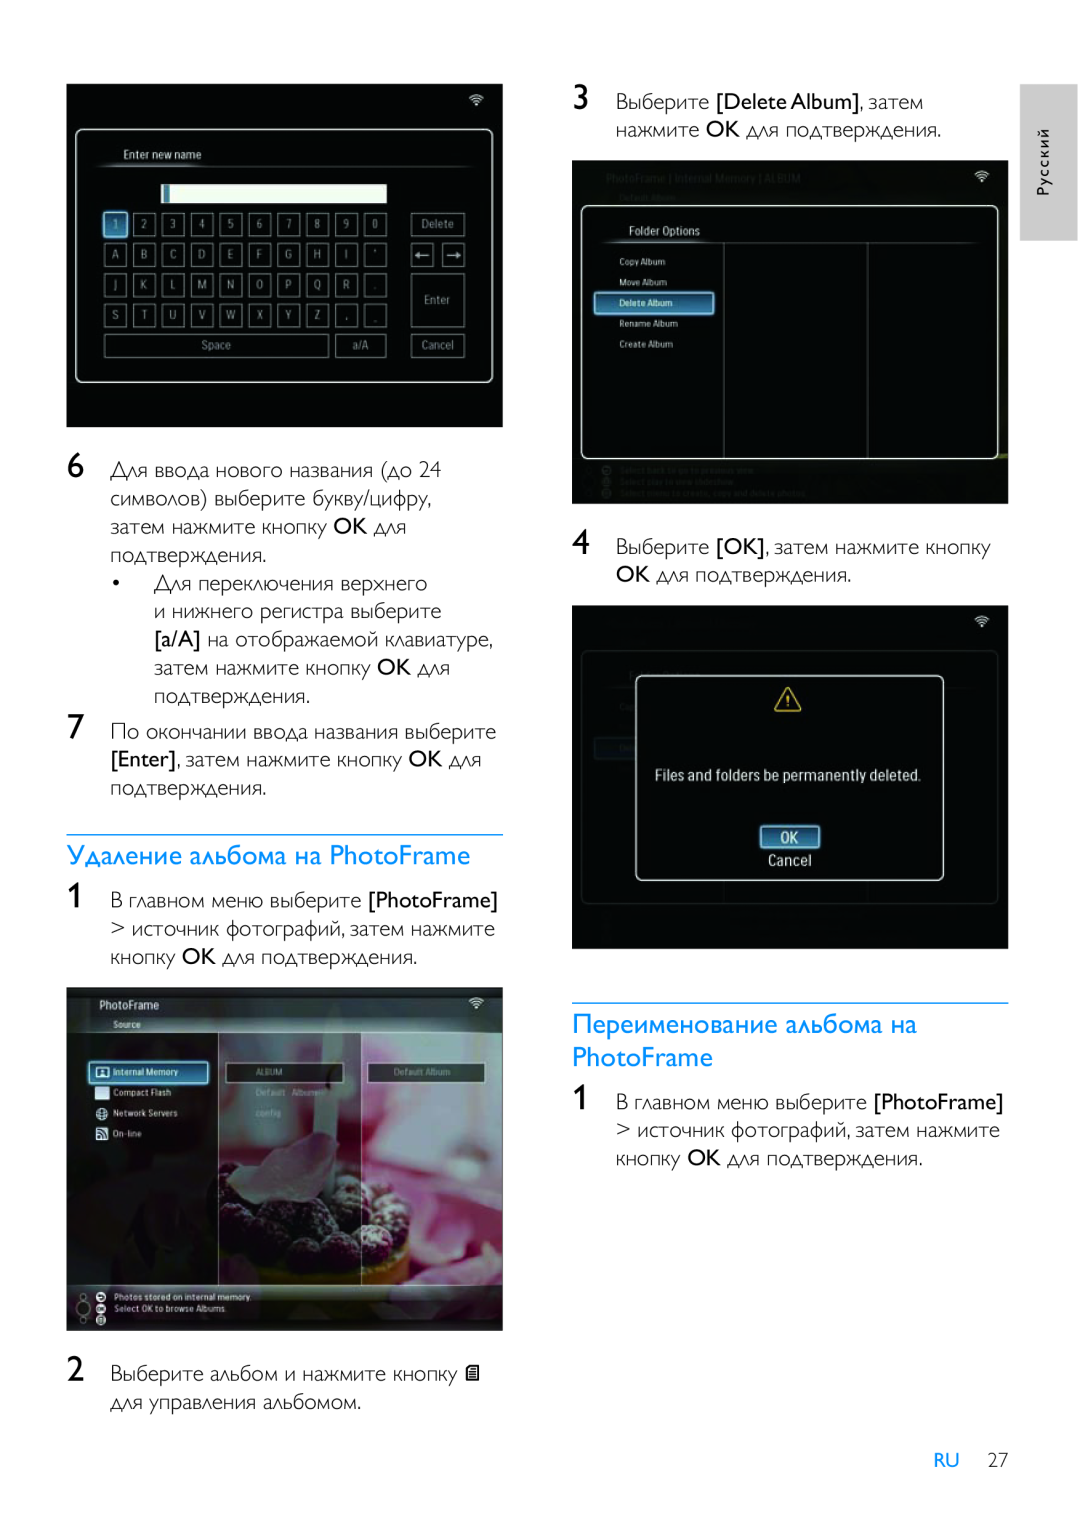 Philips 8FF3WMI manual ǜǲǽǲǵǹǲǺǻǯǭǺǵǲ ǭǸȉǮǻǹǭ Ǻǭ PhotoFrame, ǠǱǭǸǲǺǵǲ ǭǸȉǮǻǹǭ Ǻǭ PhotoFrame, 3 ǏȈǮǲǽǵǿǲ Delete Album, Ǵǭǿǲǹ 